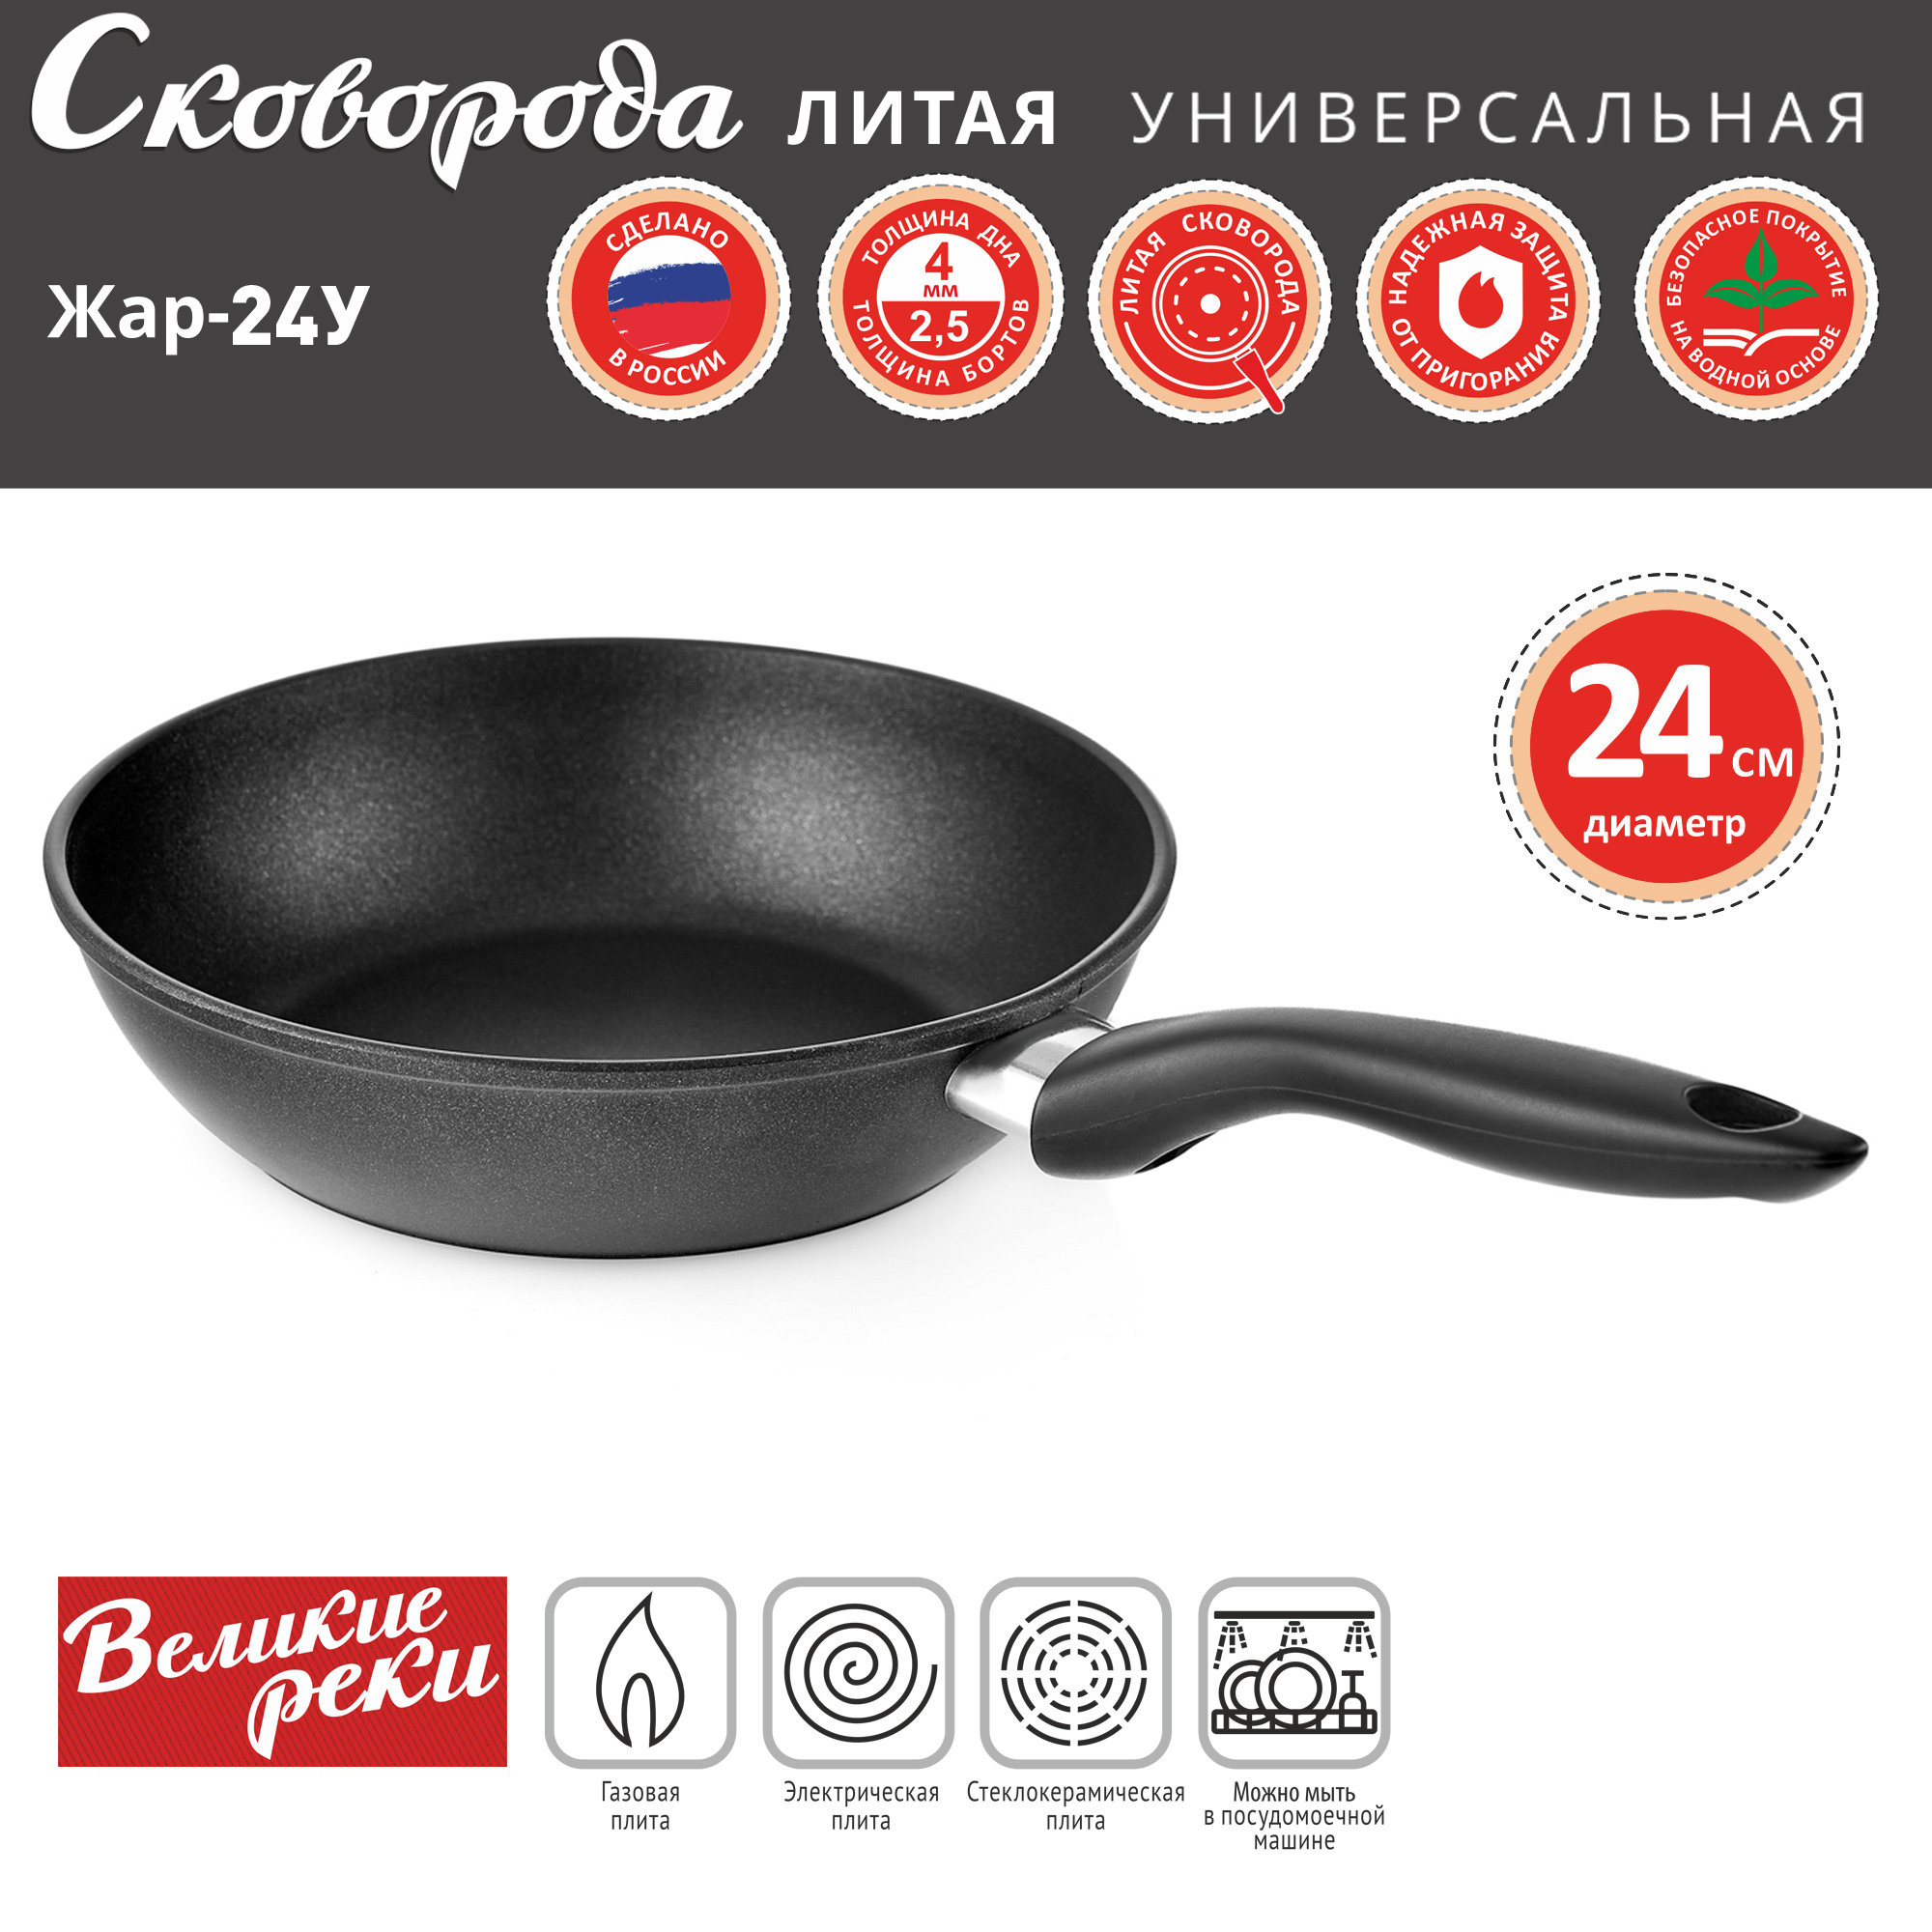 Сковорода Великие Реки Жар-24У литая универсальная 24 см